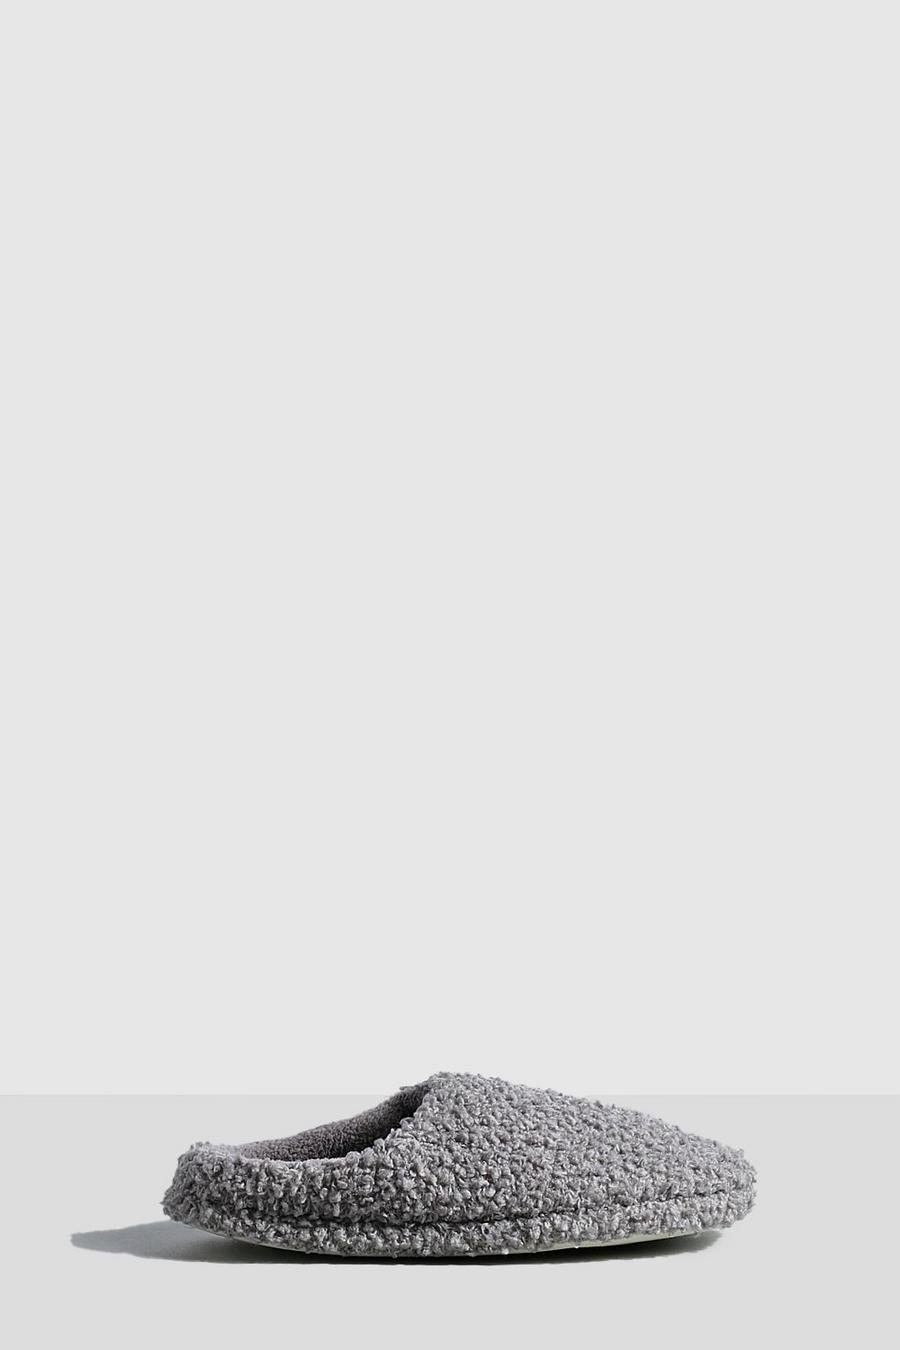 Zapatillas mule de borreguito, Grey gris